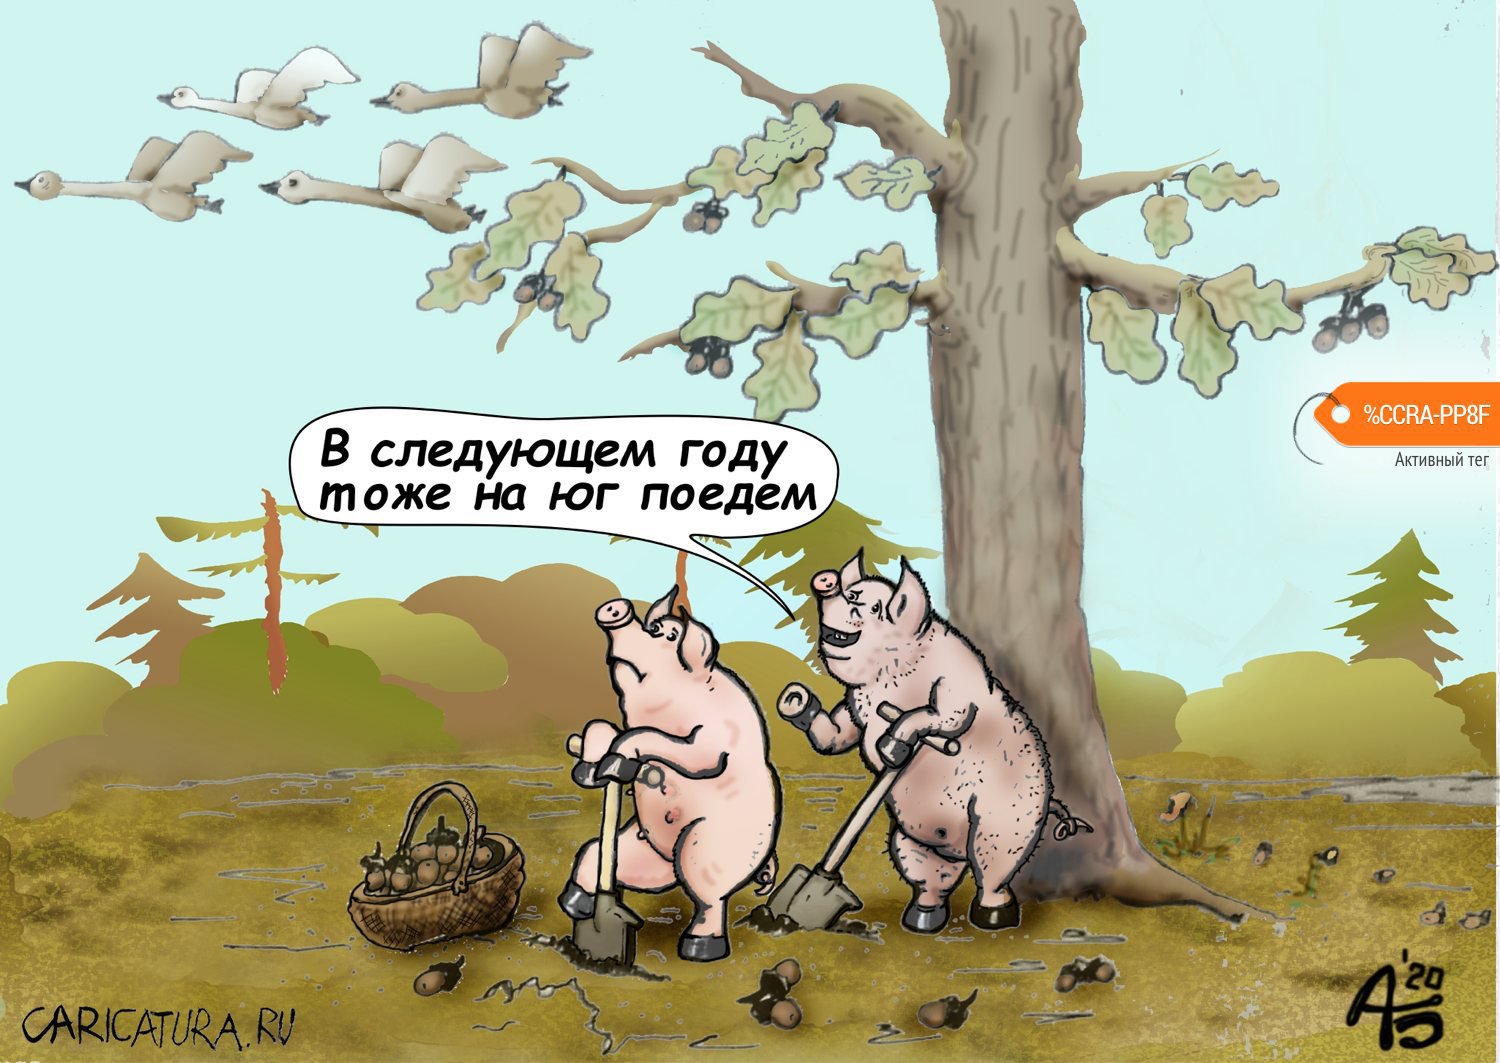 Карикатура "Мечтатели", Александр Богданов